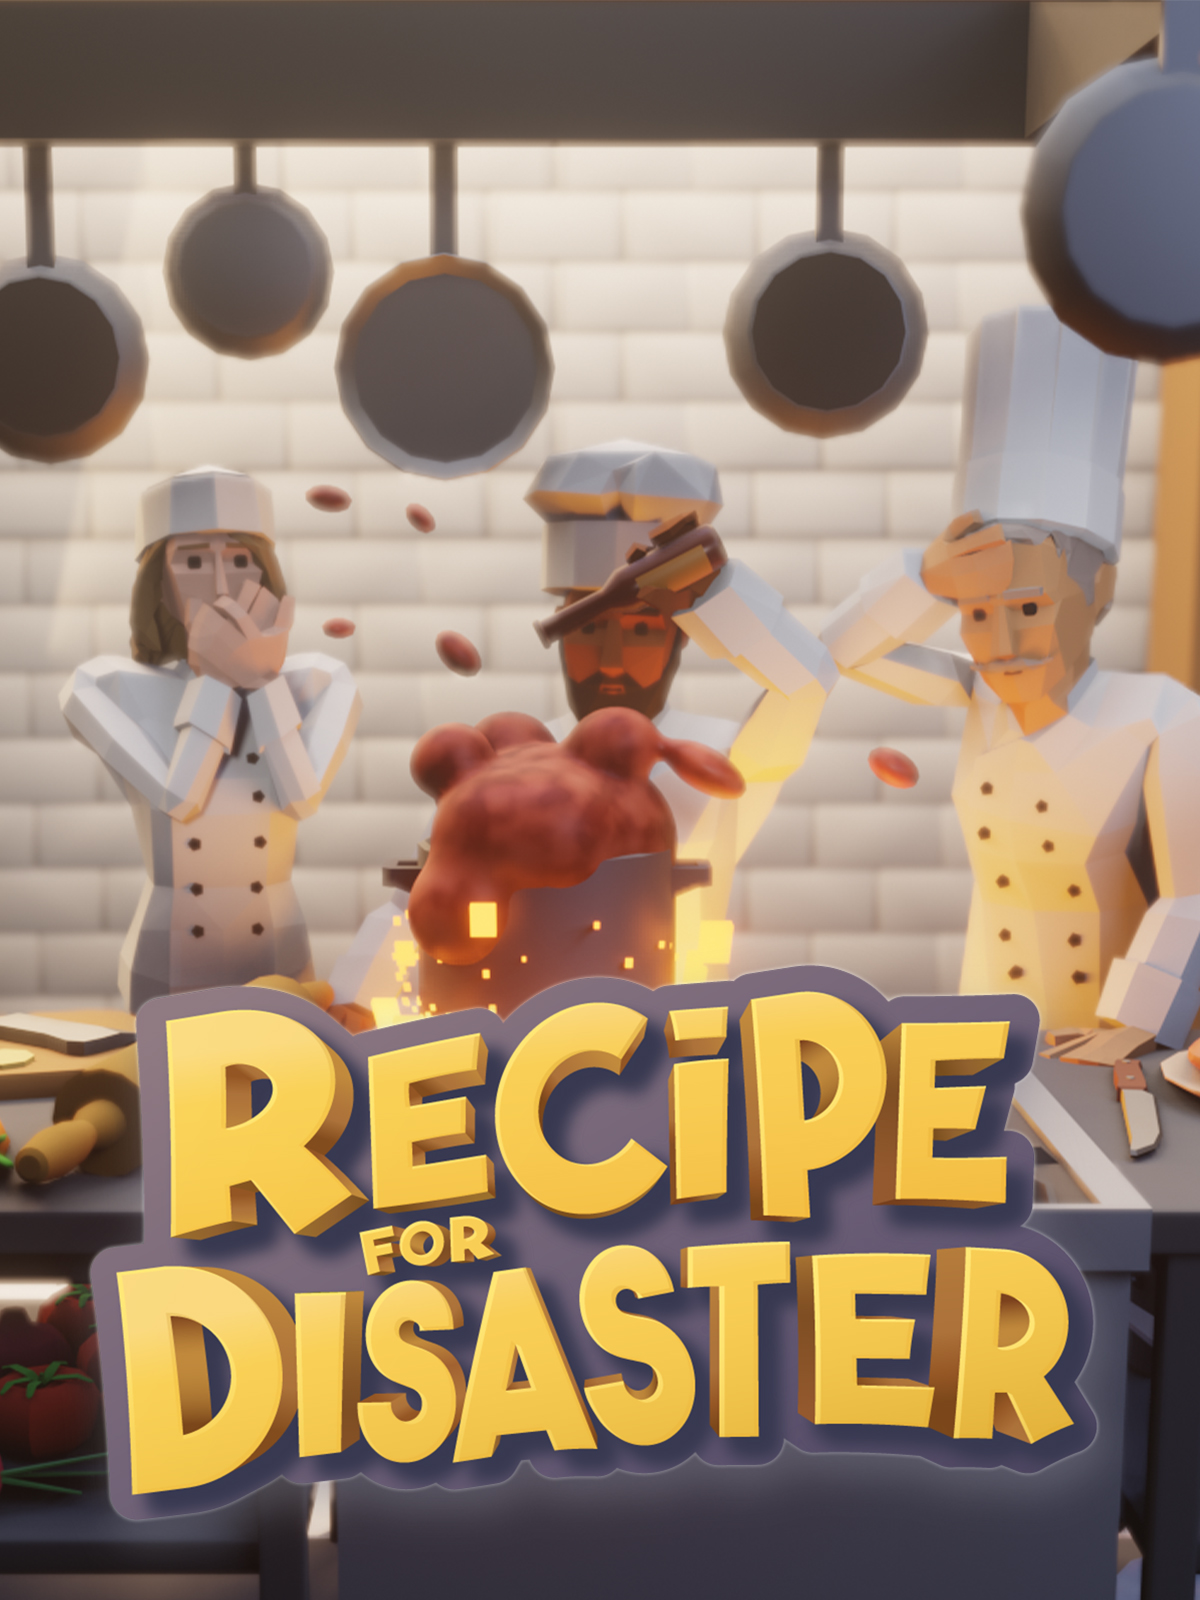 jaquette du jeu vidéo Recipe for disaster